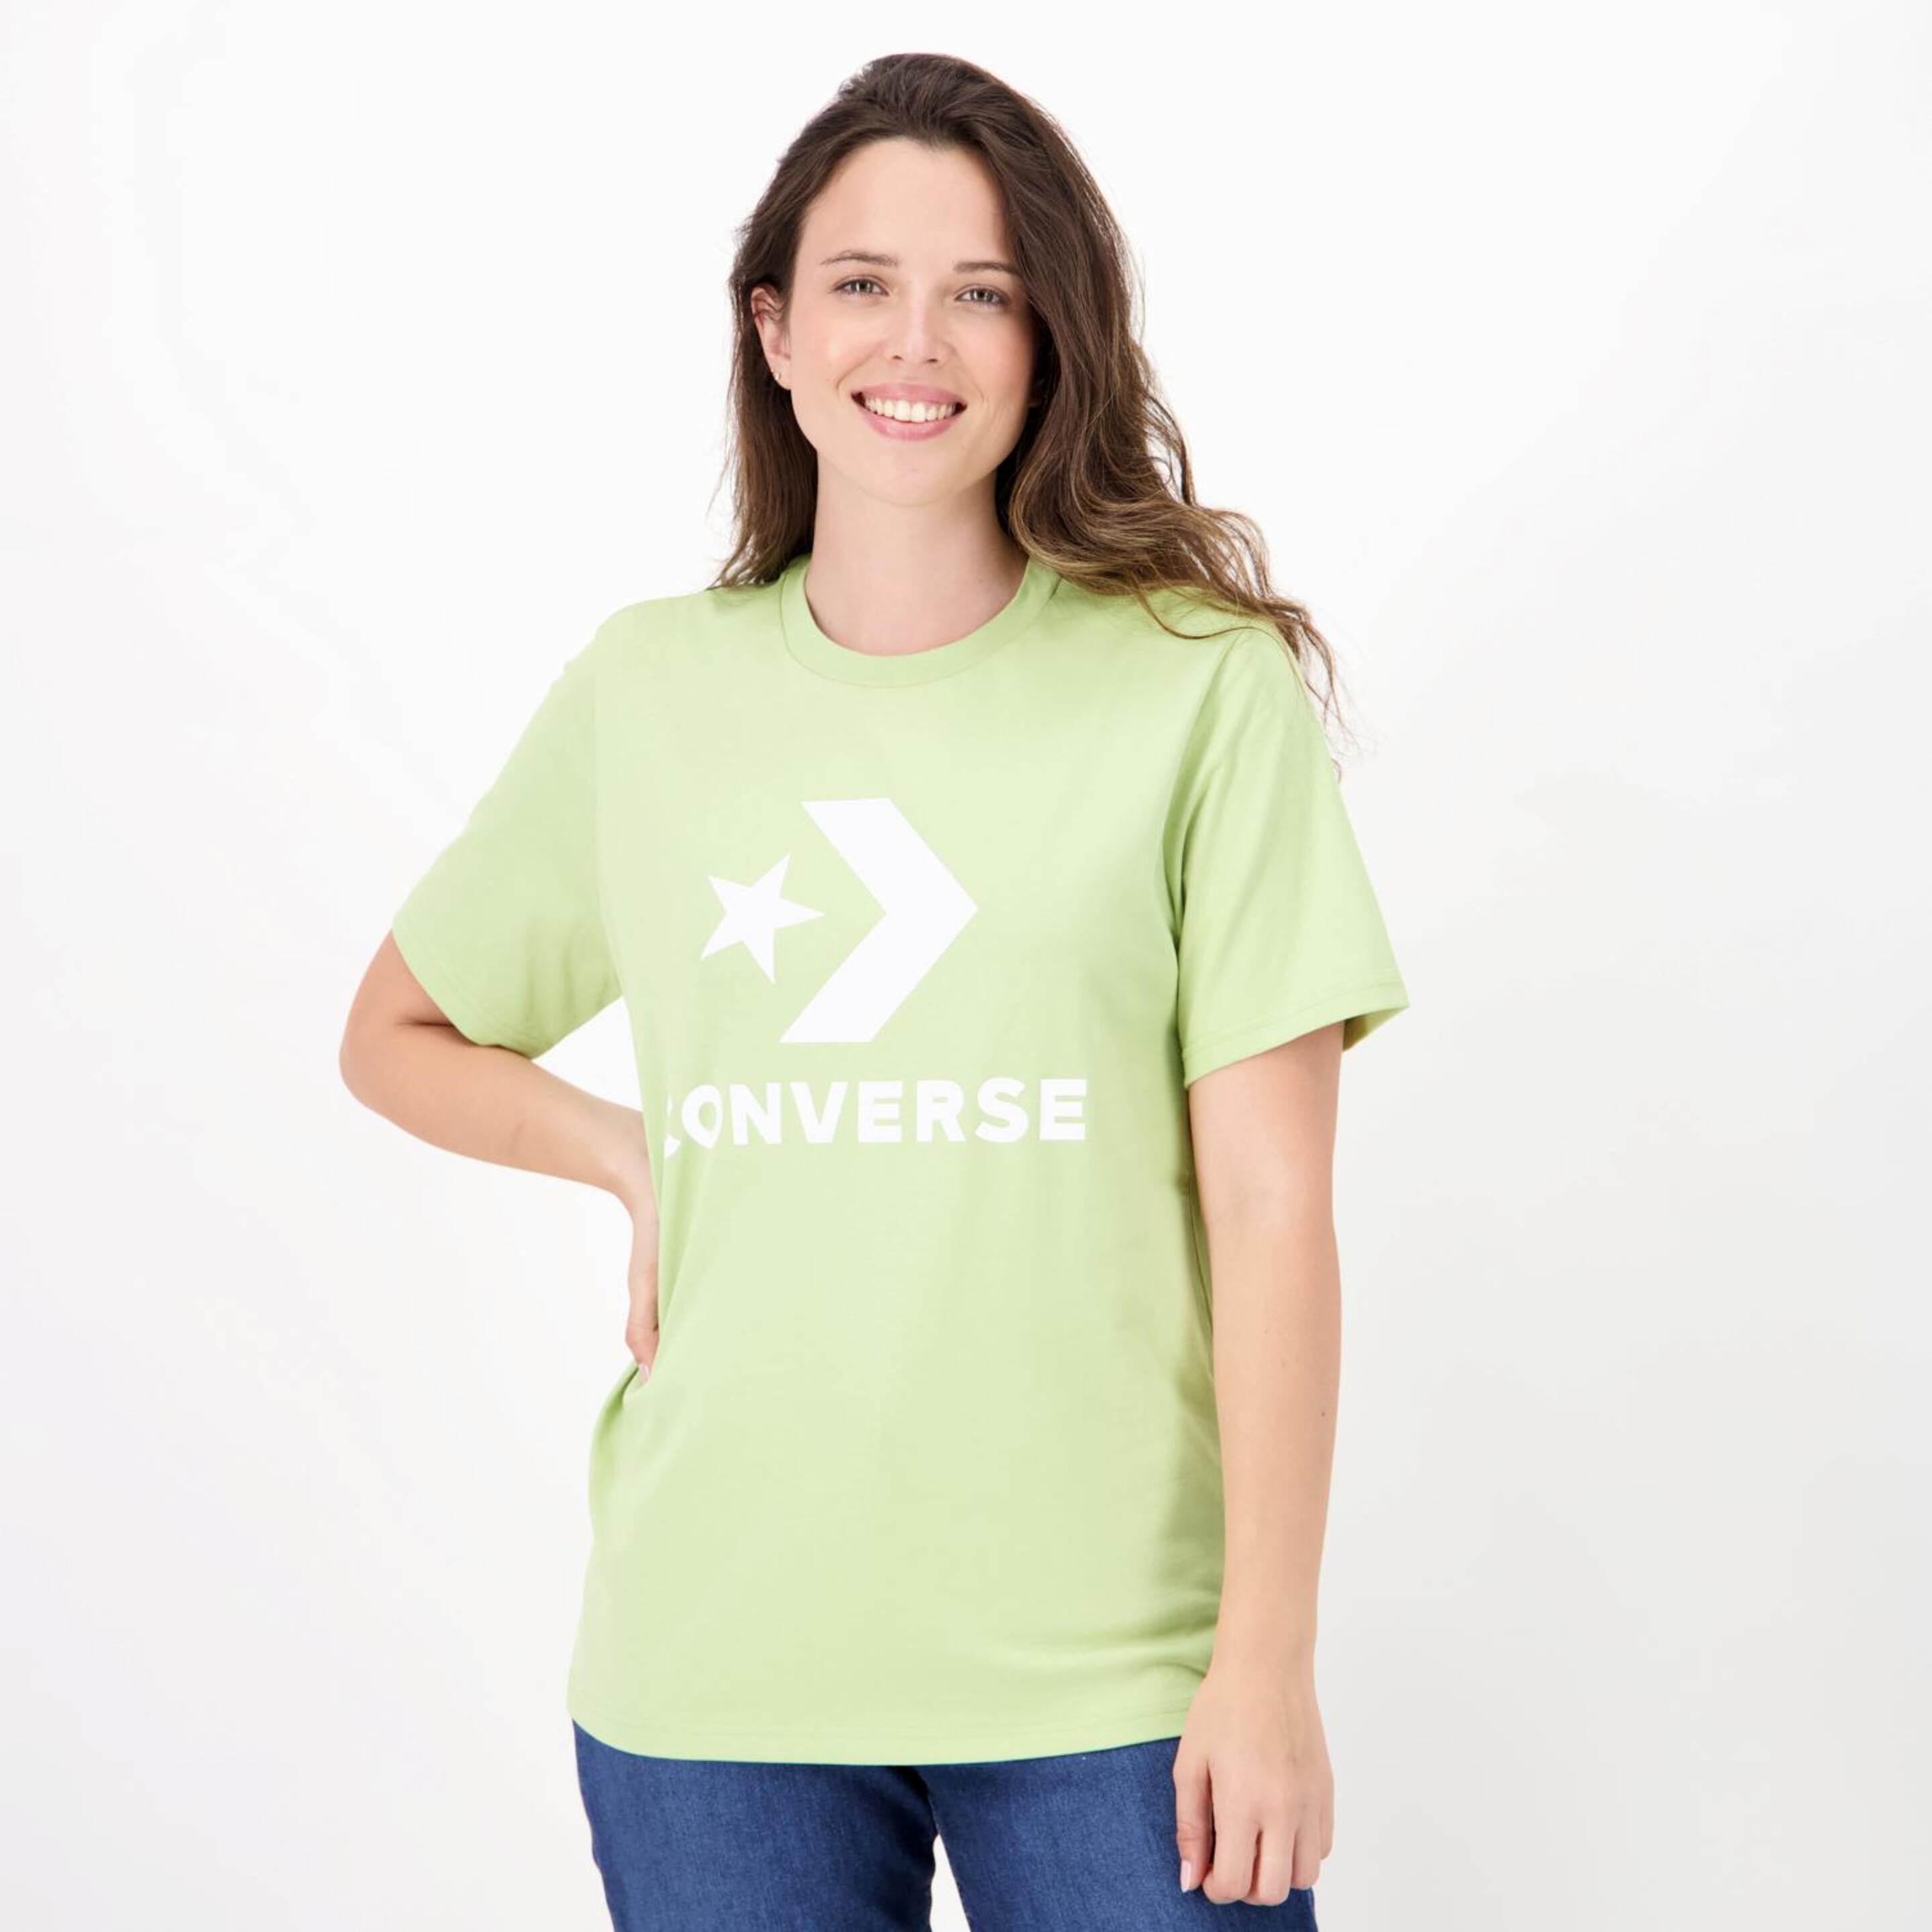 Converse Star Chevron - verde - T-shirt Mulher